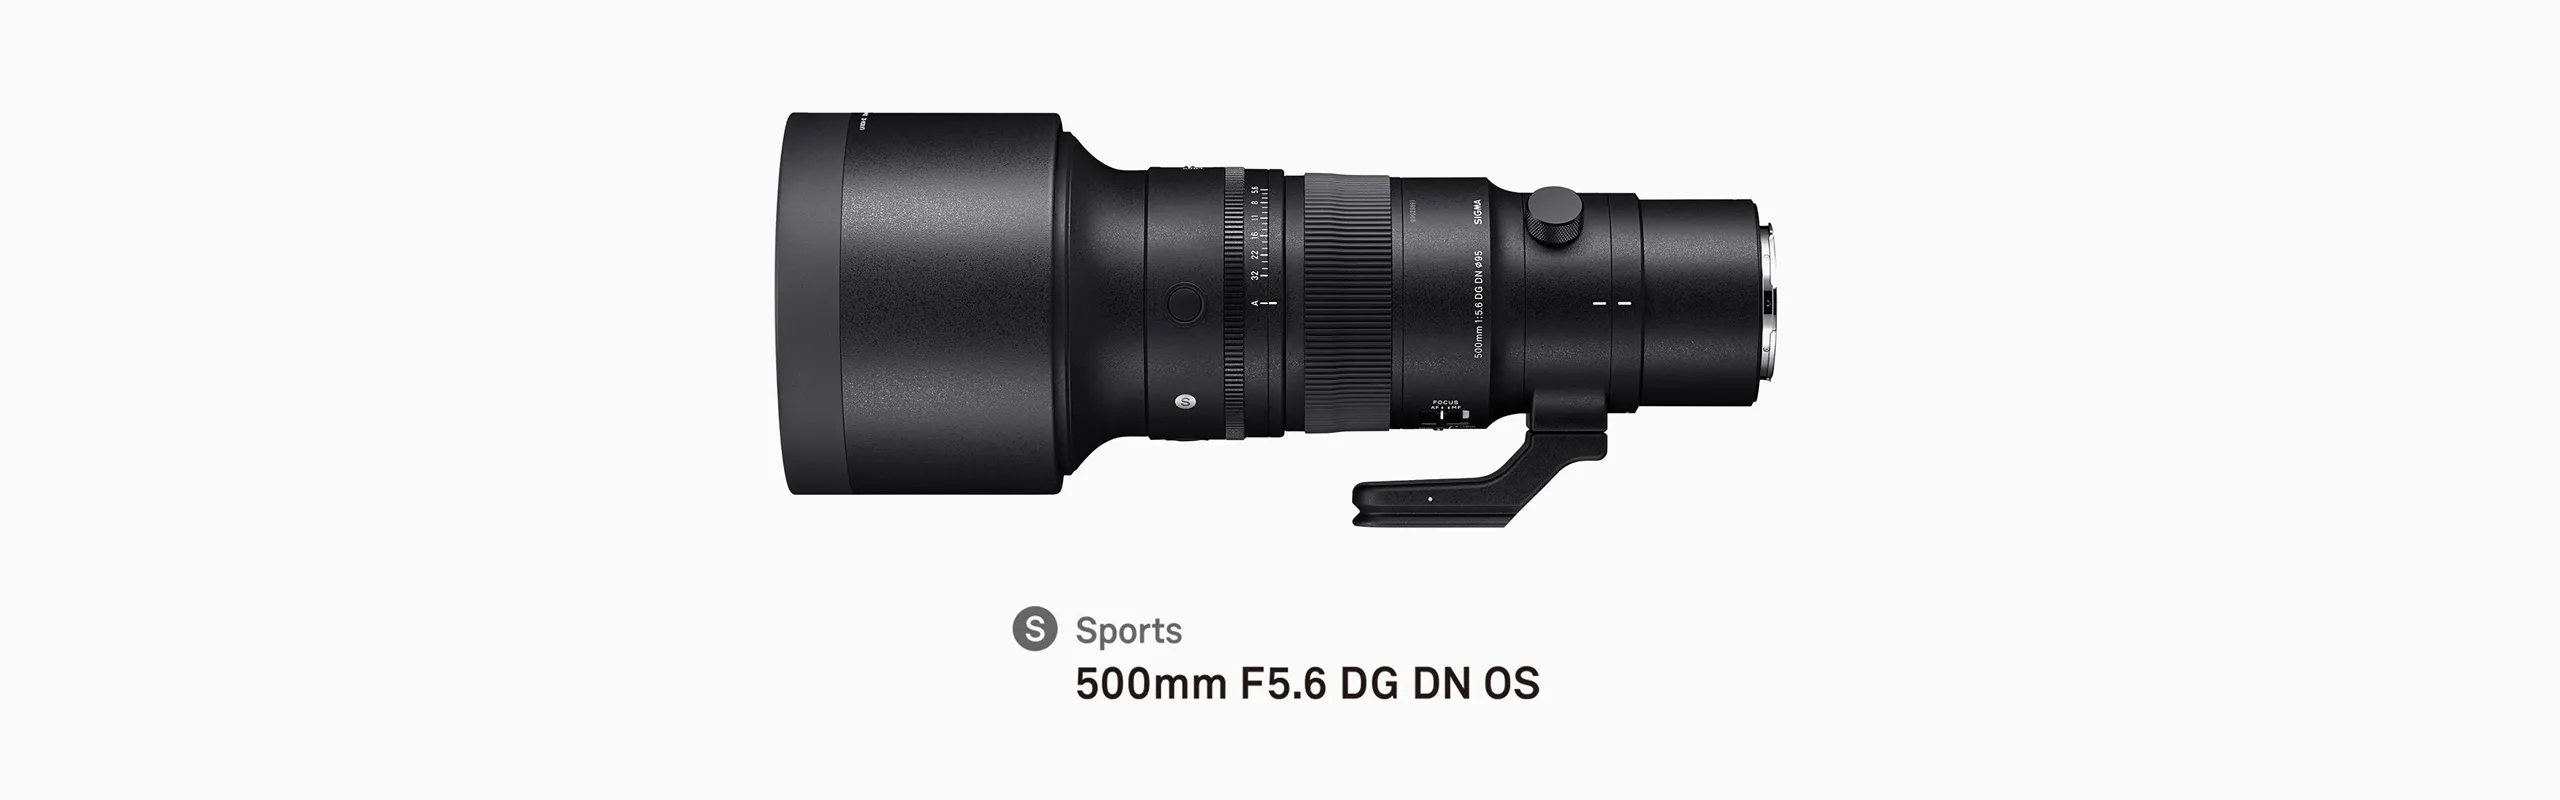 Ống kính Sigma 500mm F5.6 DG DN OS Sports cho Sony E